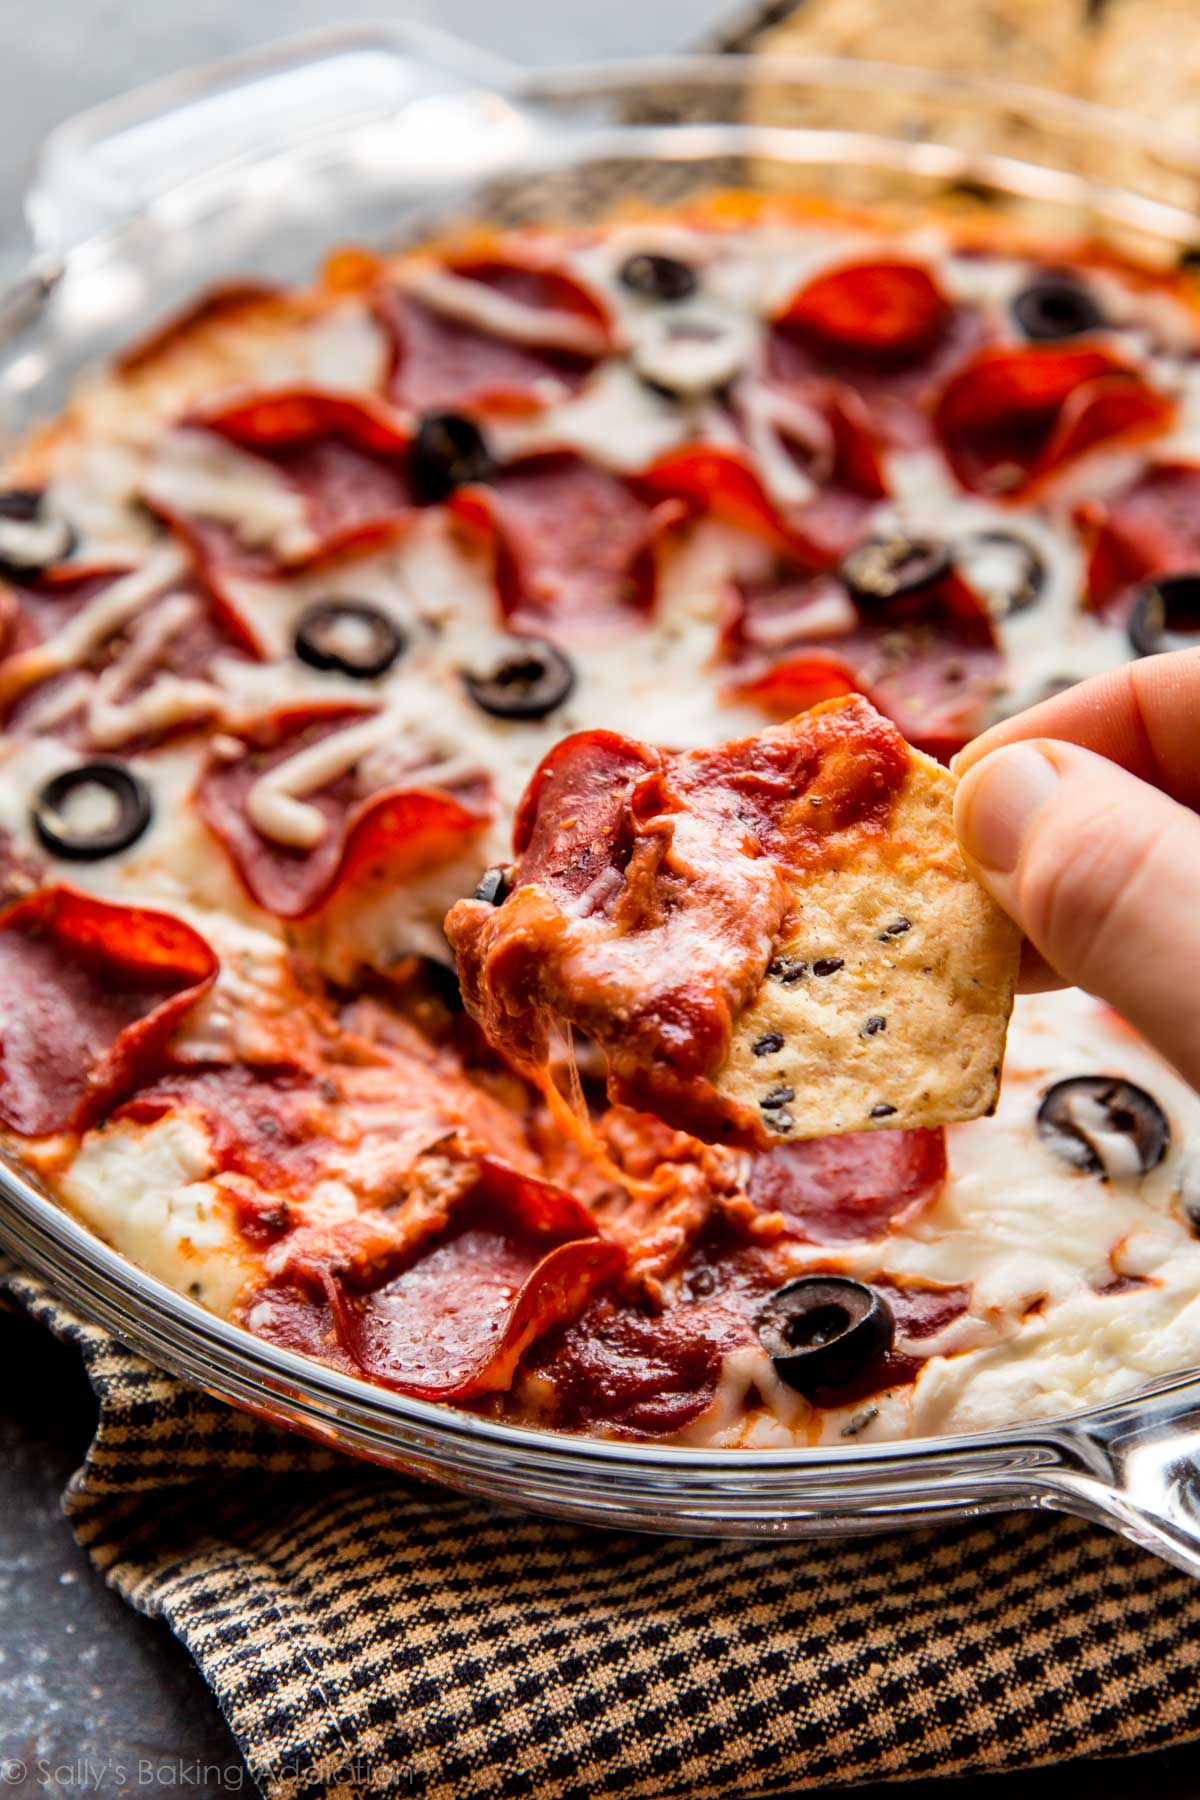 Trempette de pizza au pepperoni allégée rapide et facile avec du yogourt grec - c'est ma recette préférée de trempette pour pizza! sallysbakingaddiction.com